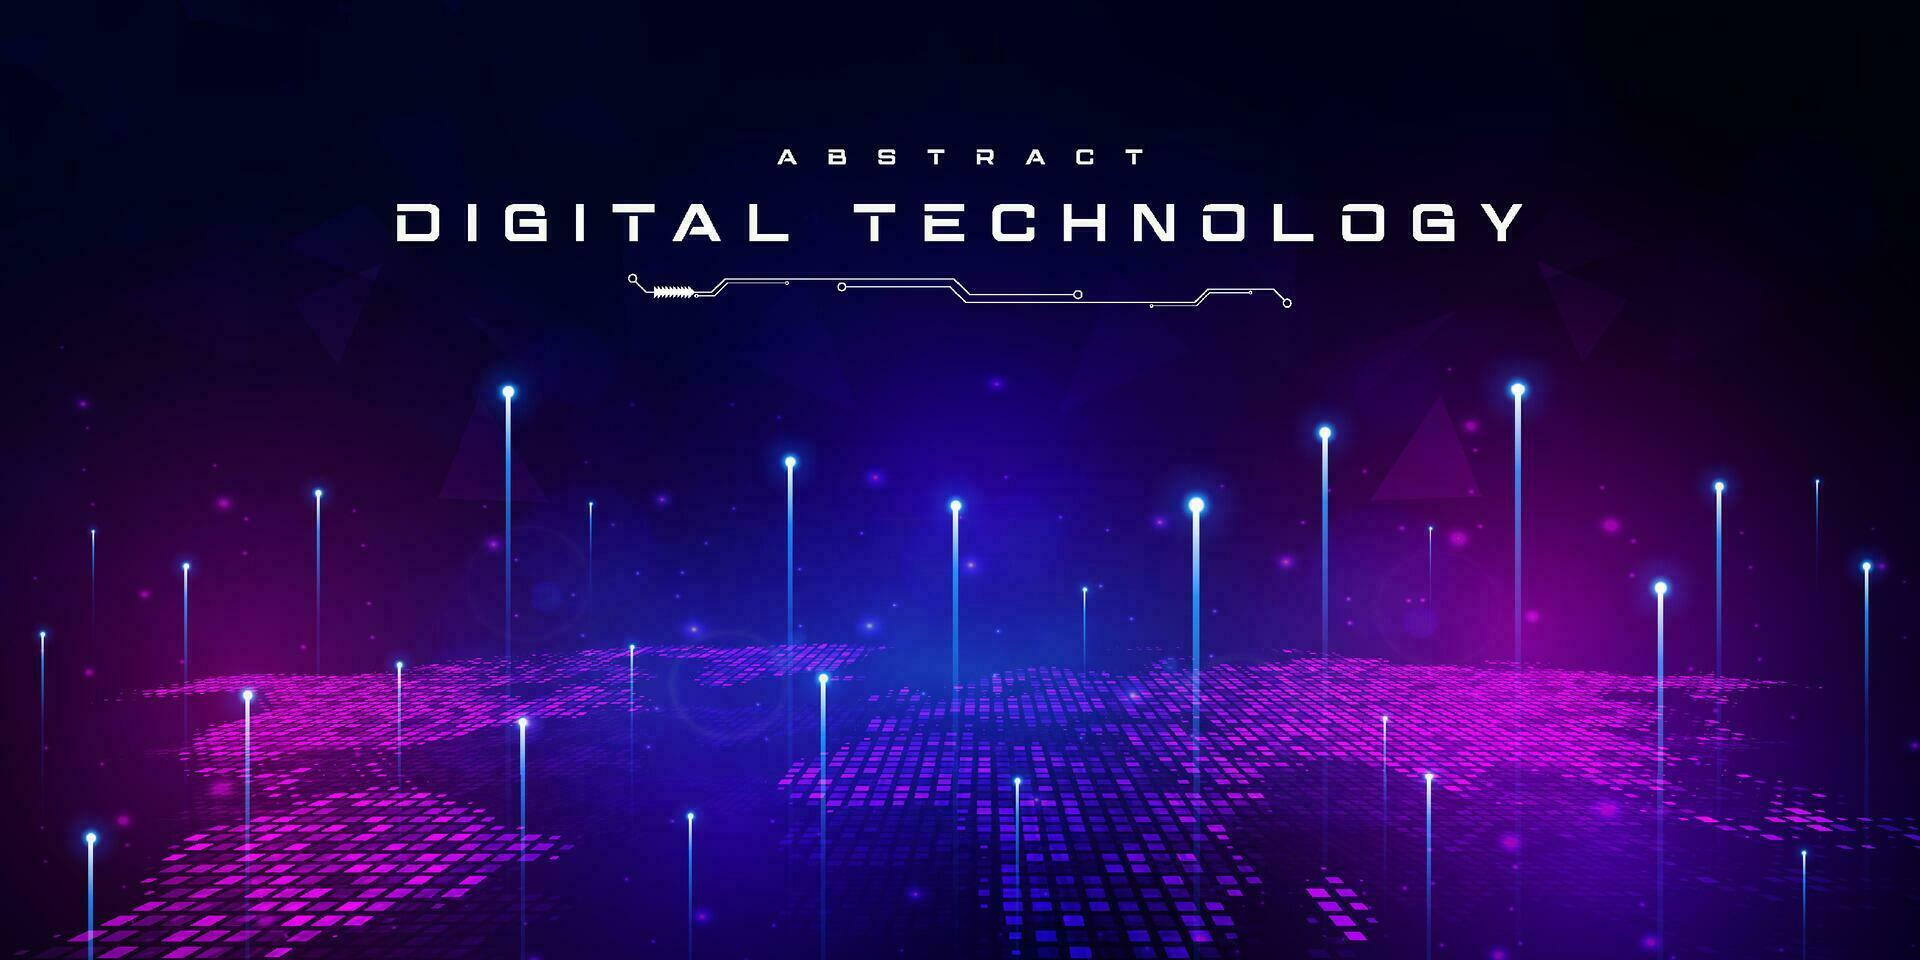 tecnología digital abstracta circuito futurista fondo rosa azul, tecnología de ciencia cibernética, futuro de comunicación de innovación, datos grandes ai, conexión de red de Internet, vector de ilustración de alta tecnología en la nube